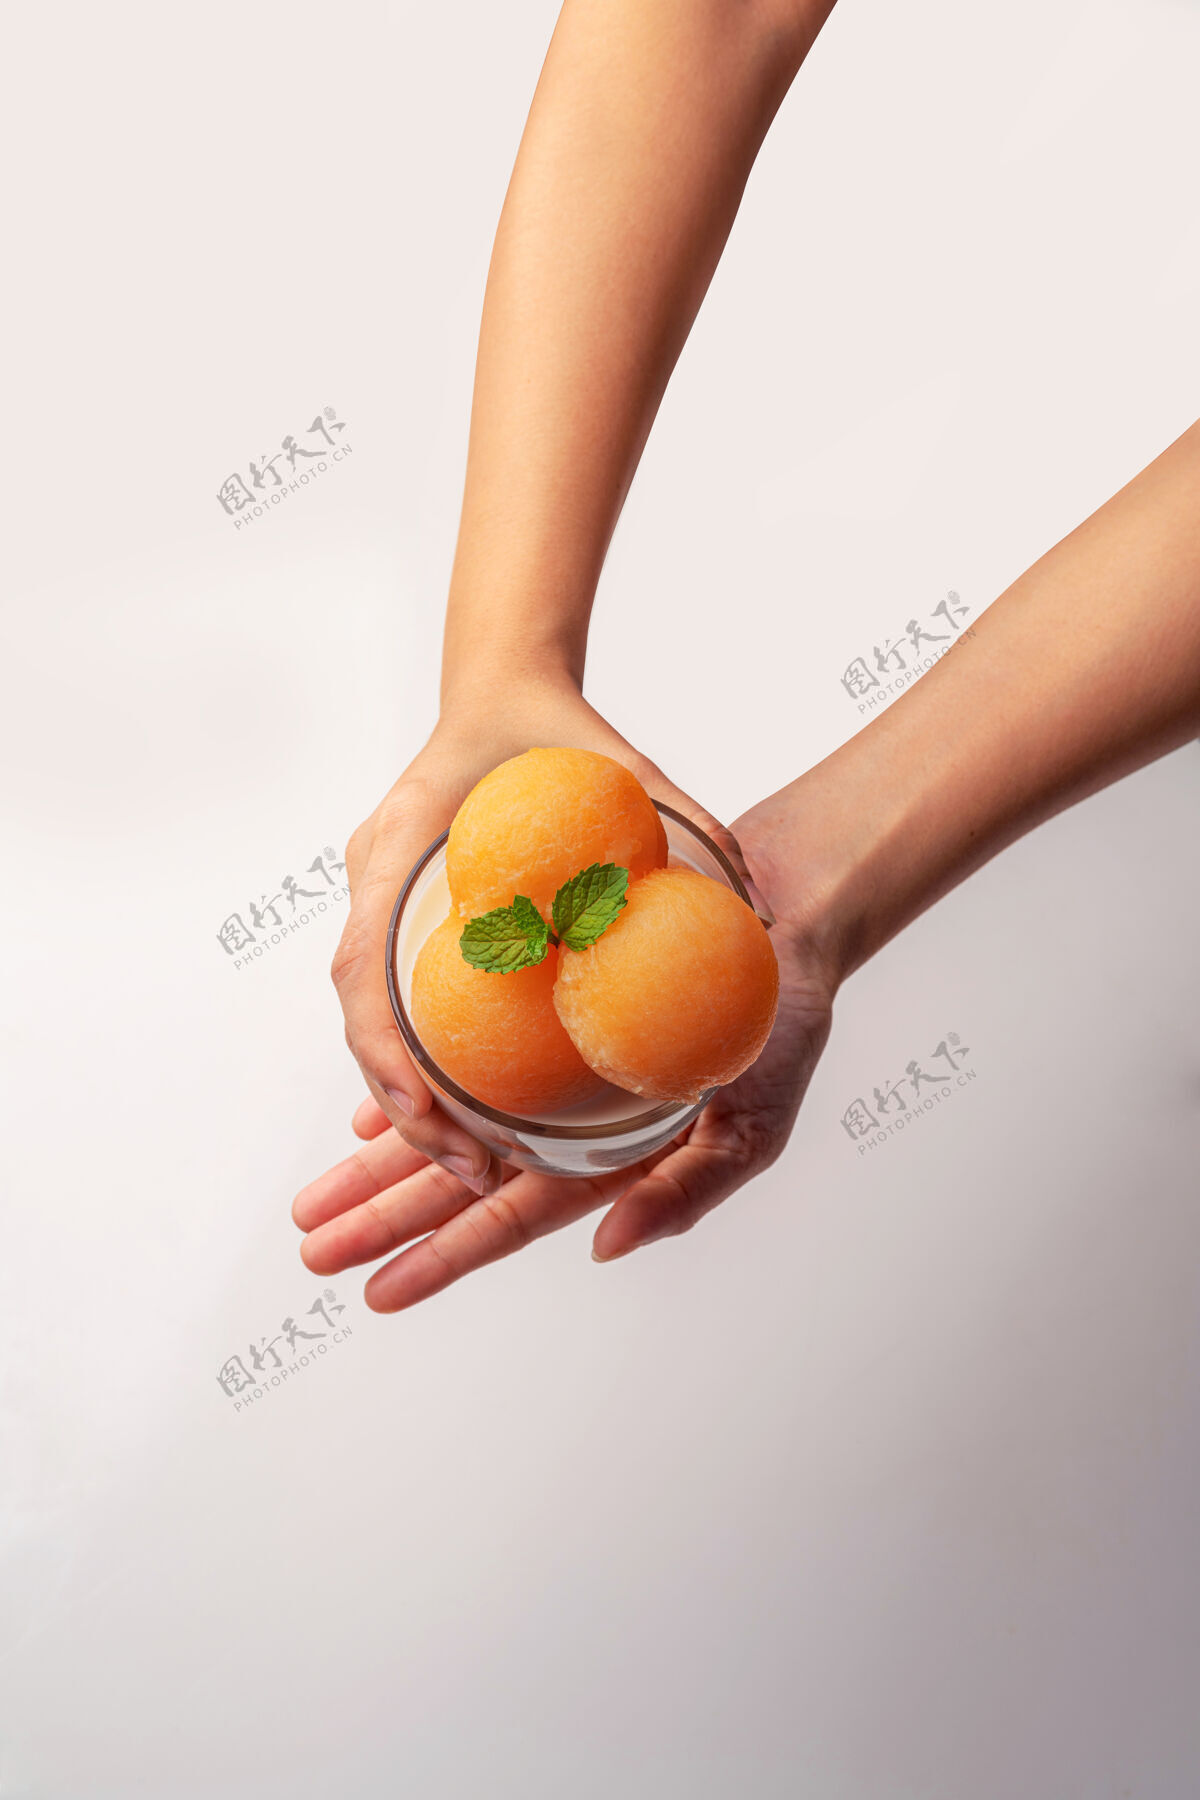 块黄瓜瓜被舀成圆球状 像冰激凌一样放进透明的玻璃杯里 上面浇上鲜奶 香甜可口生蔬菜健康